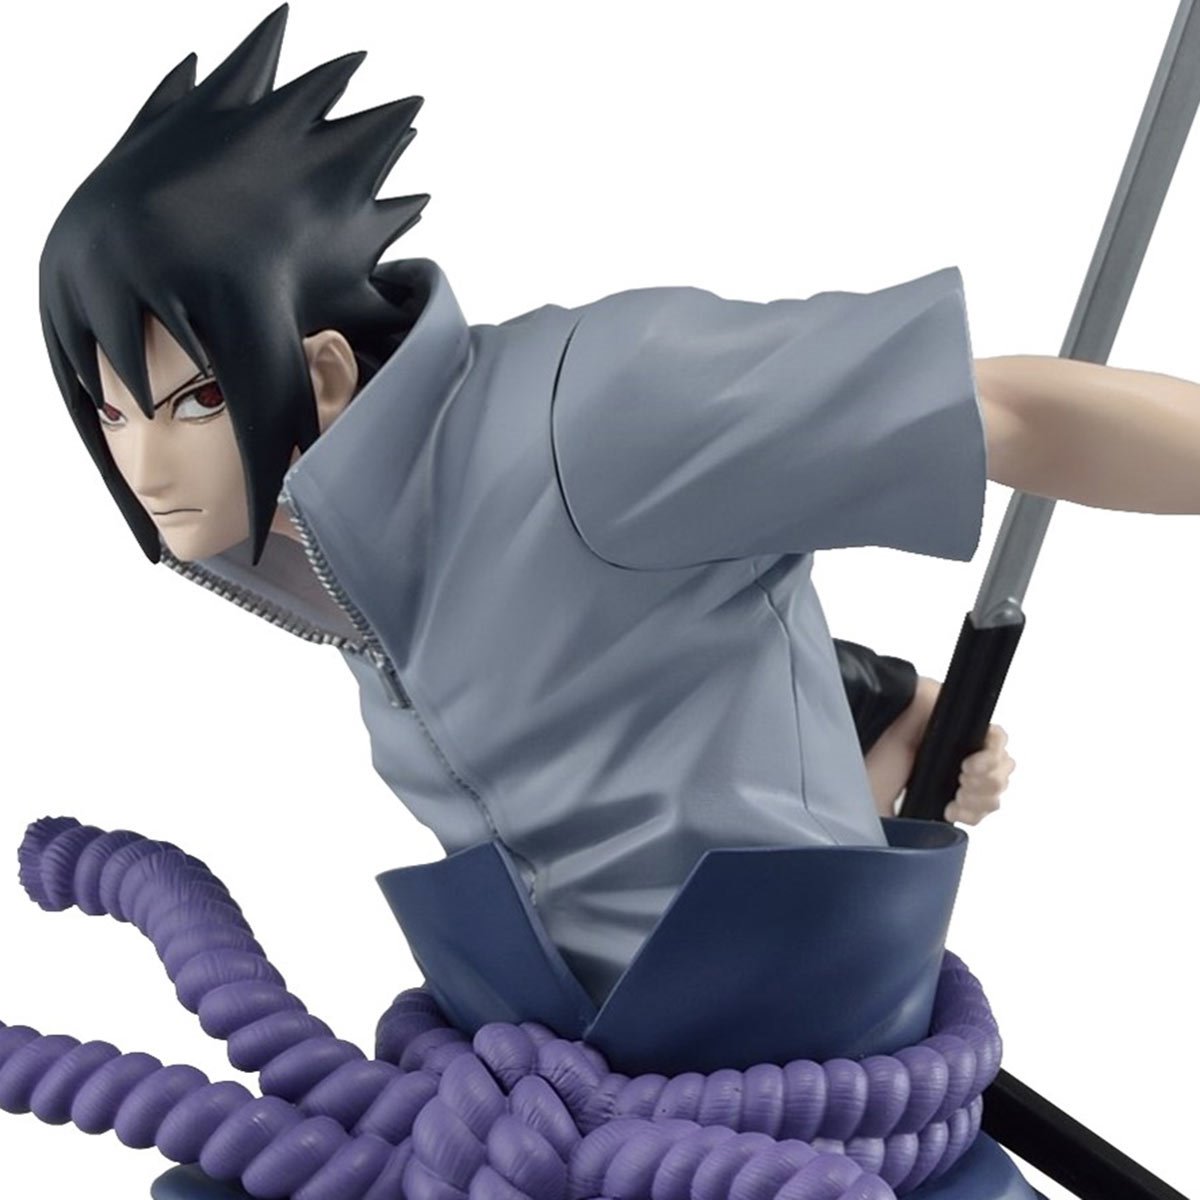 Naruto Shippuden: Uchiha Sasuke Statue